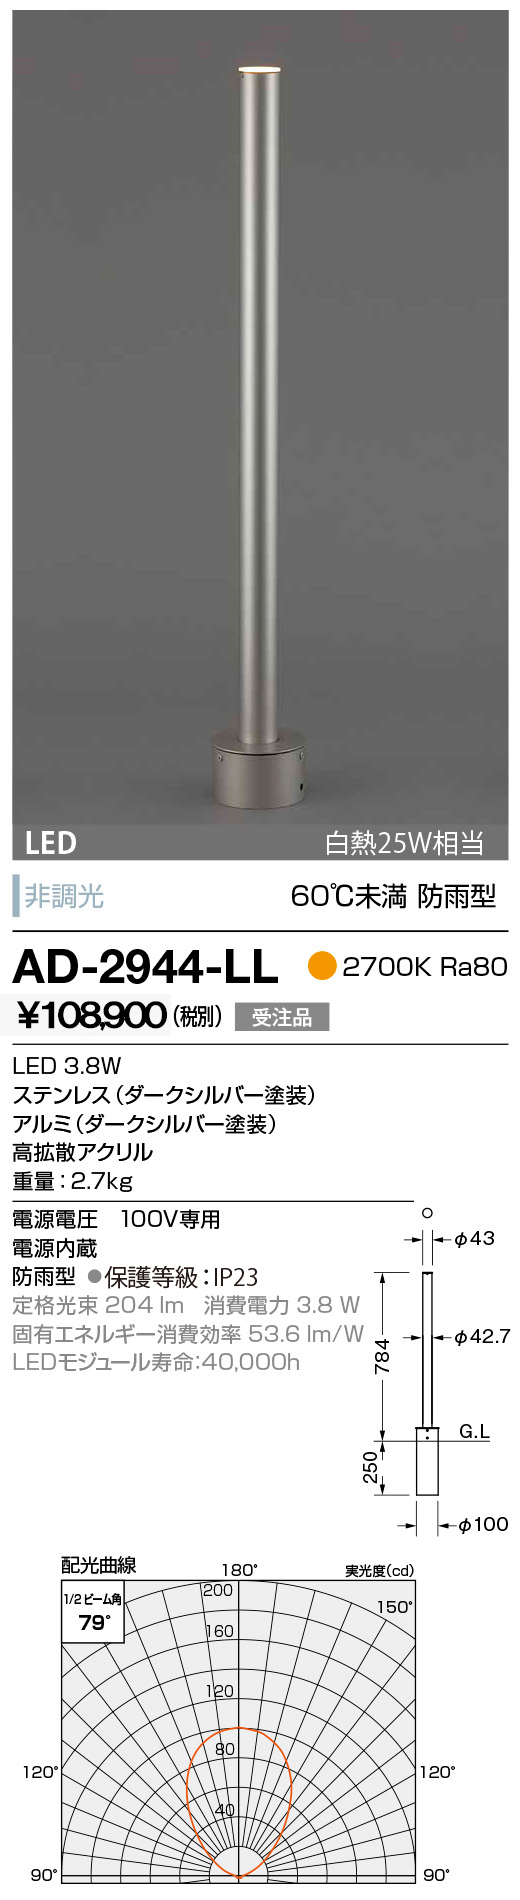 AD-2657-L 山田照明 ガーデンライト 黒色 LED - 1